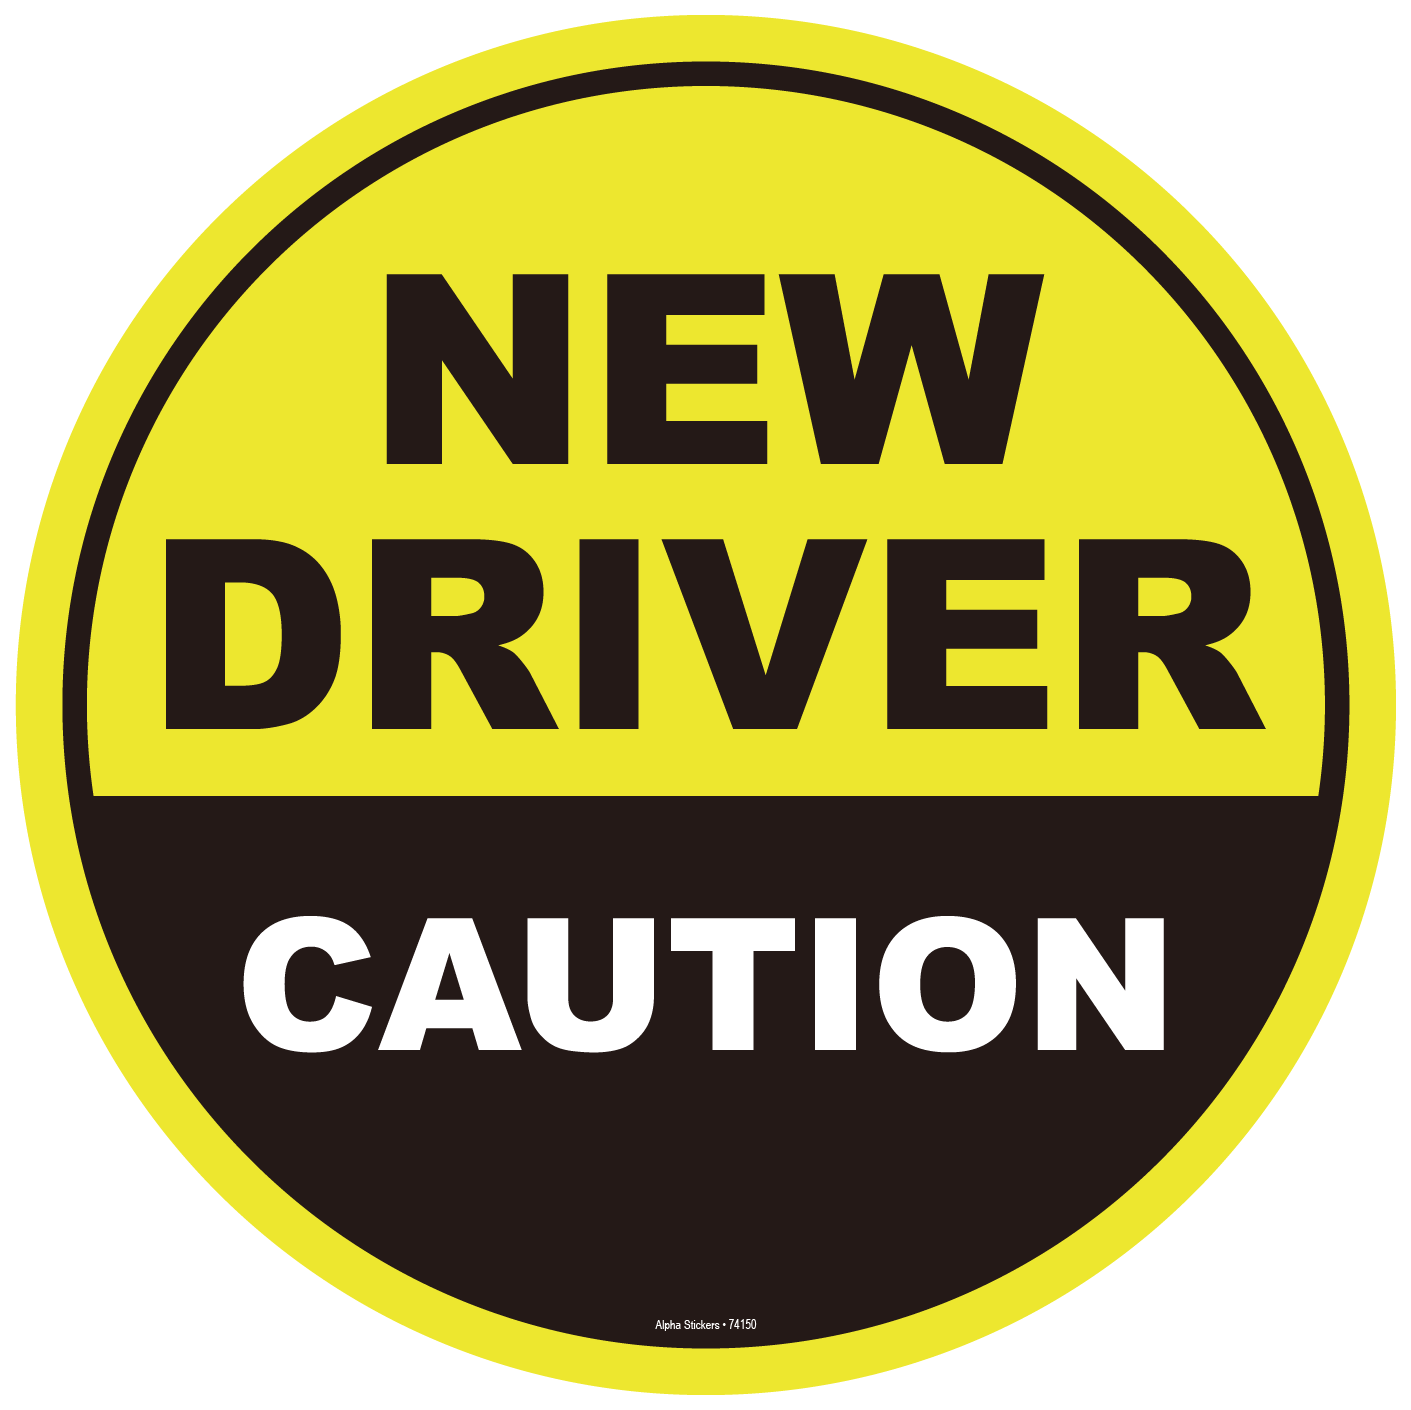 caution-new-driver-vinyl-sticker-size-4-7-w-x-4-7-h-set-of-2pcs